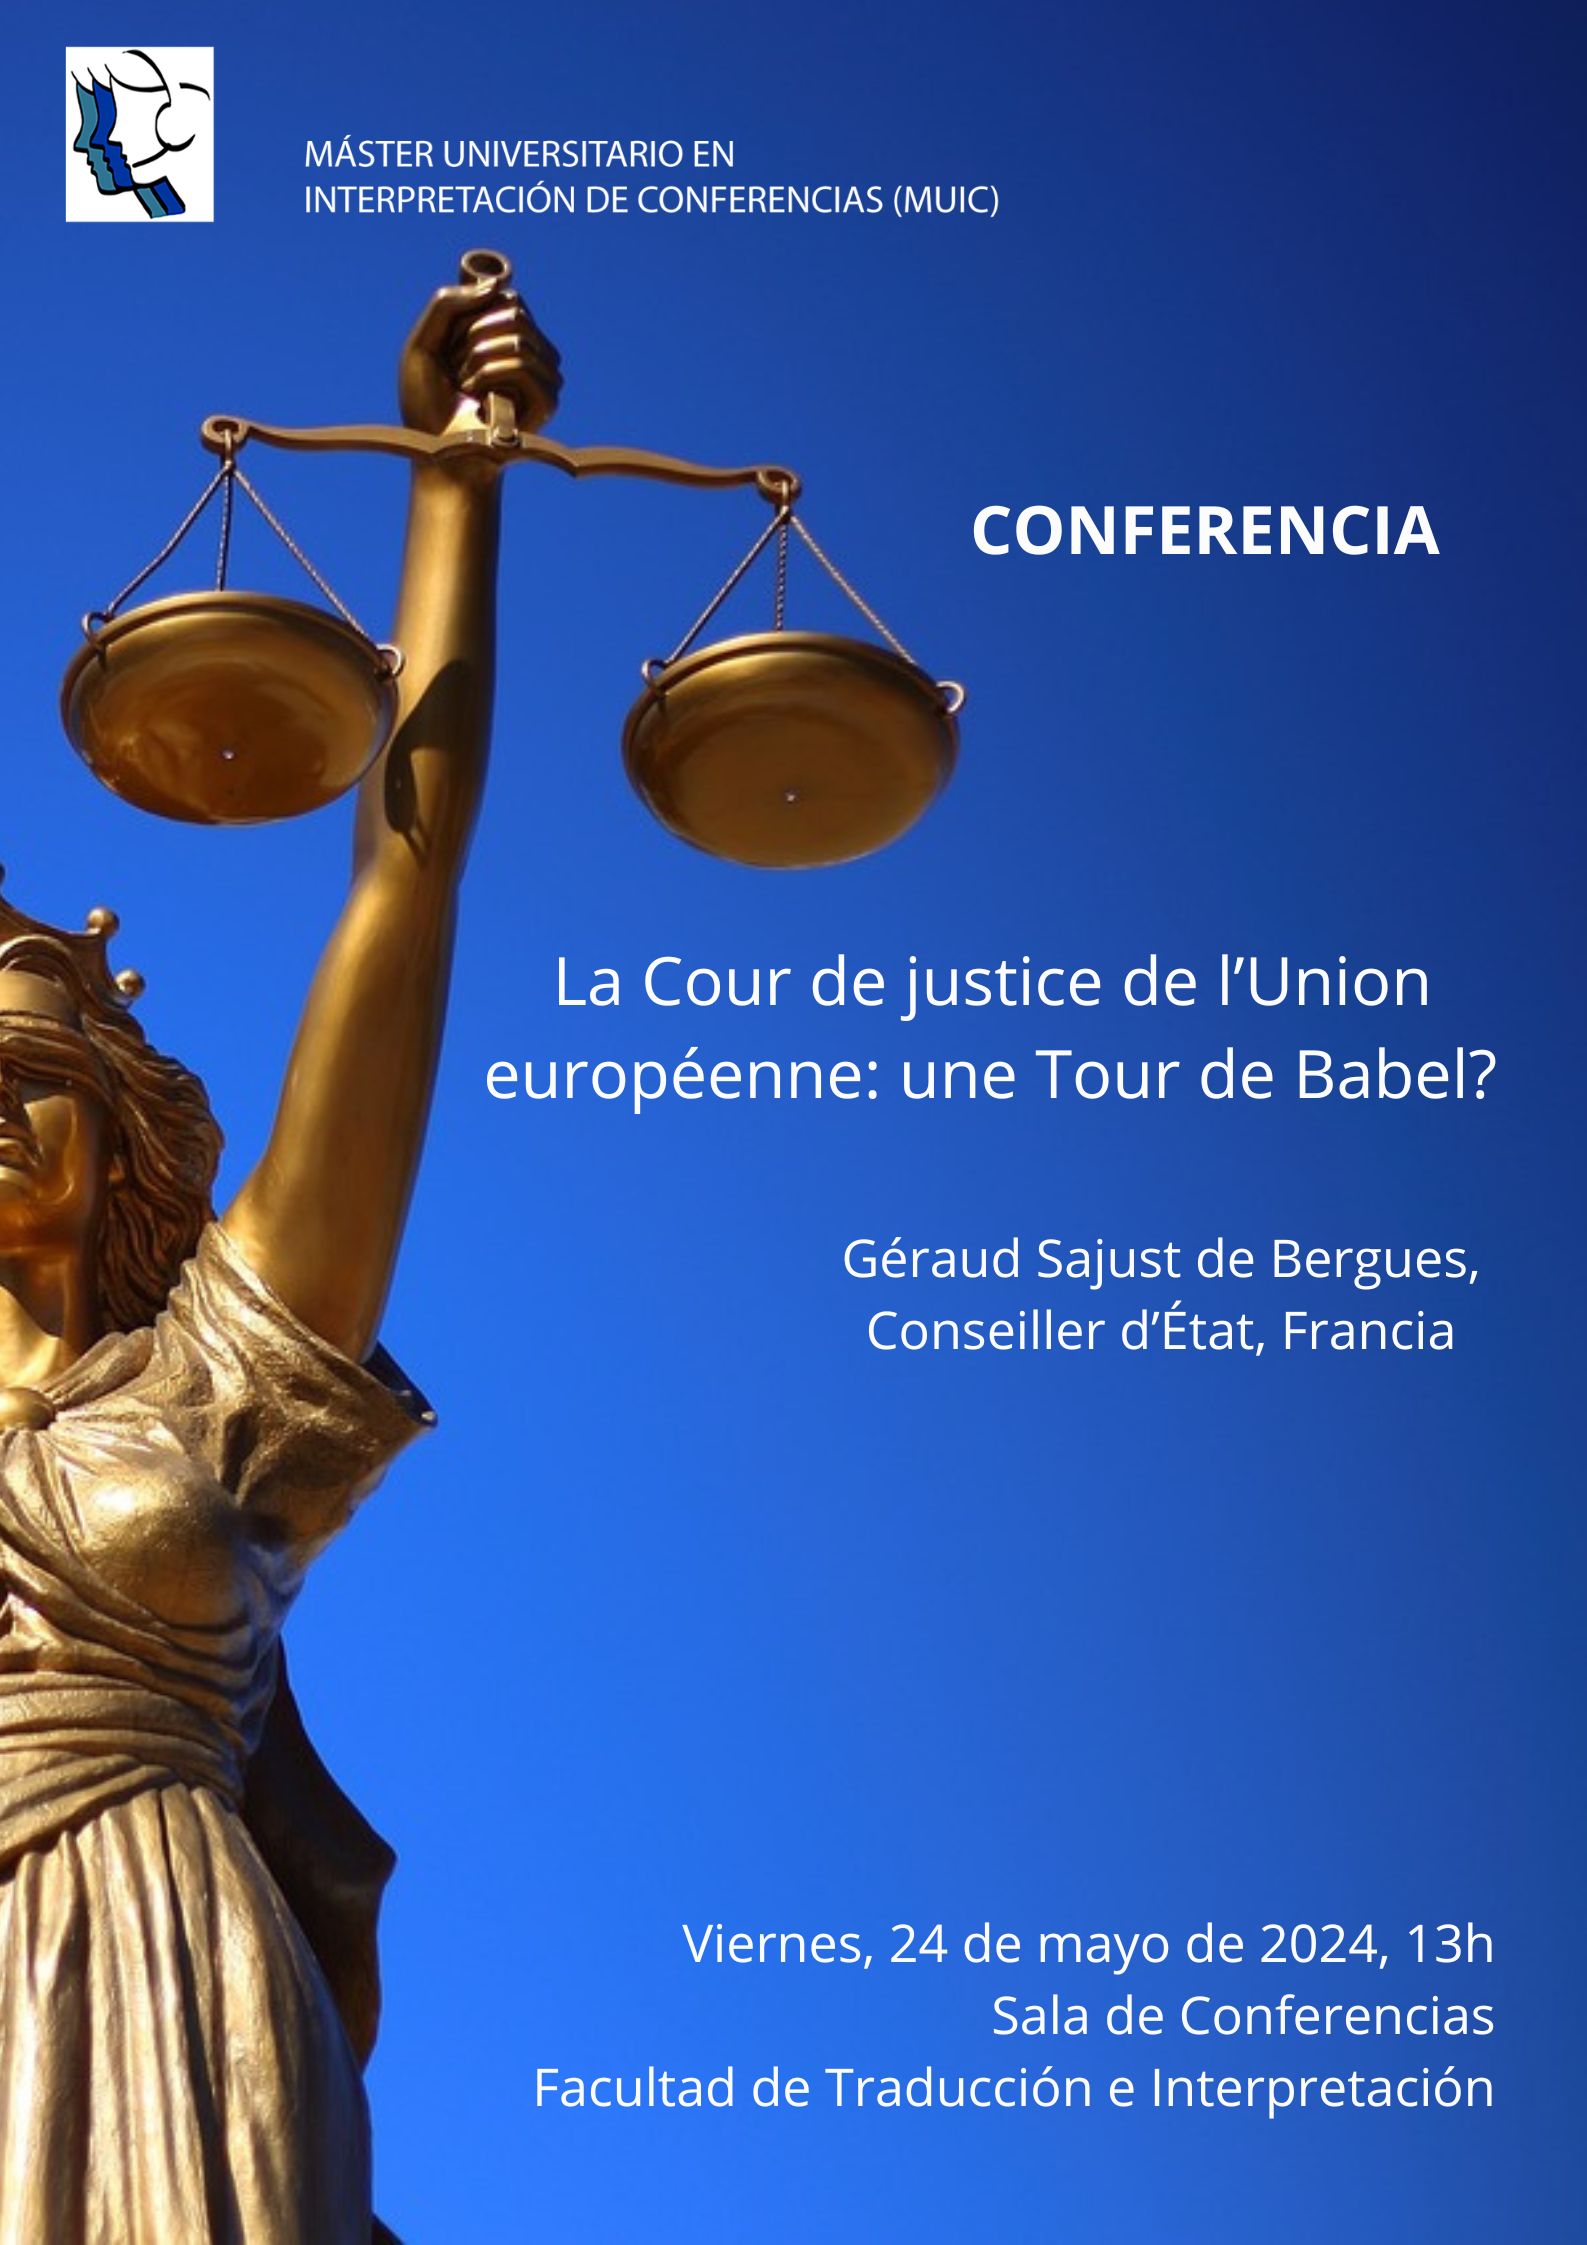 Cartel conferencia El Máster en Interpretación de Conferencias (MUIC) invita a la conferencia  *La Cour de Justice de l’Union européenne: une Tour de Babel?*  a cargo de Géraud Sajust de Bergues (Conseiller d’Etat, Francia). 